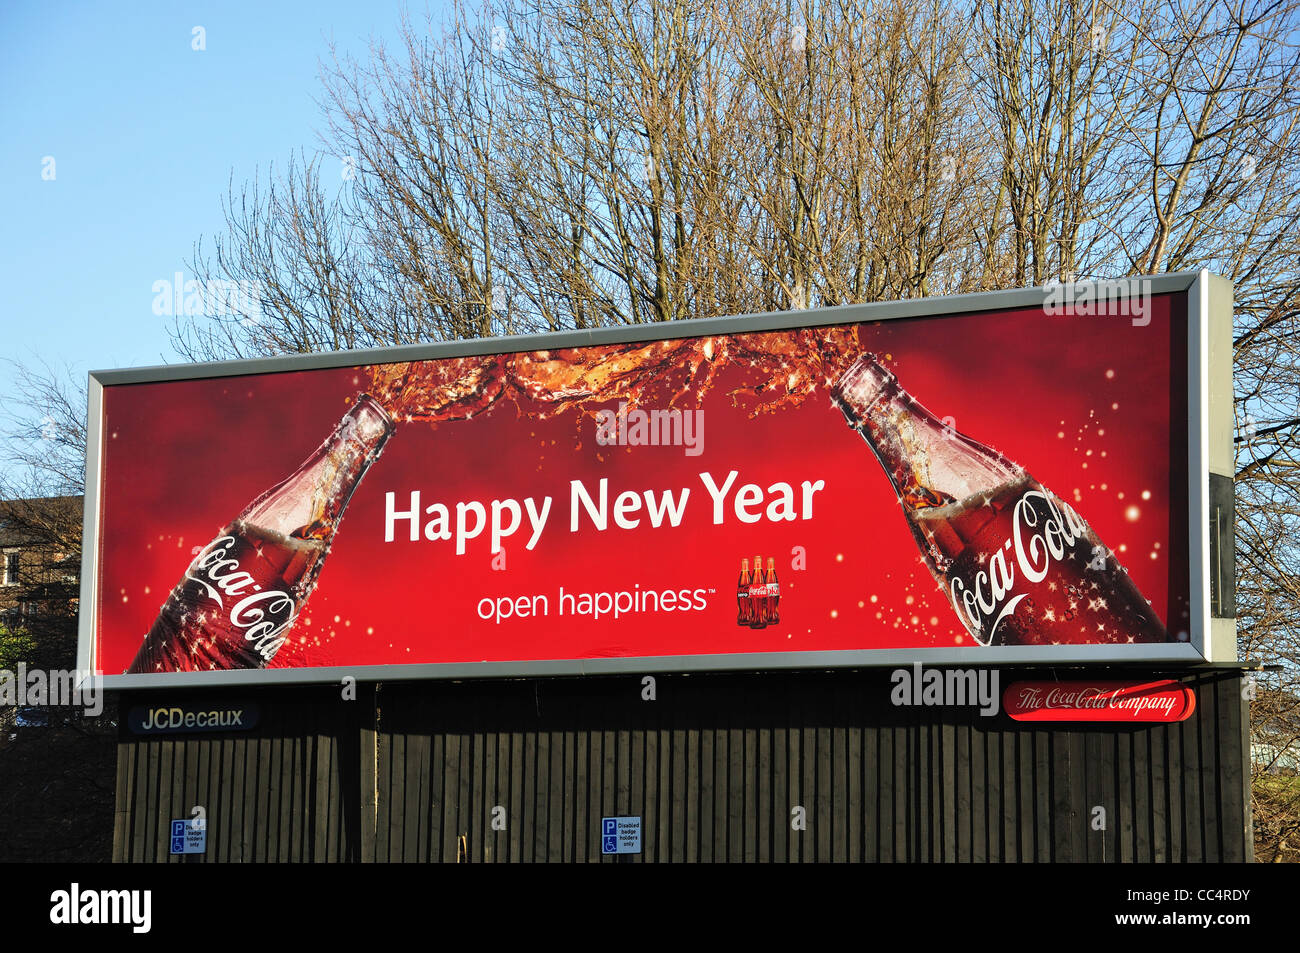 Coca-Cola cartellone pubblicitario nel centro cittadino di Newcastle upon Tyne, Tyne and Wear, England, Regno Unito Foto Stock